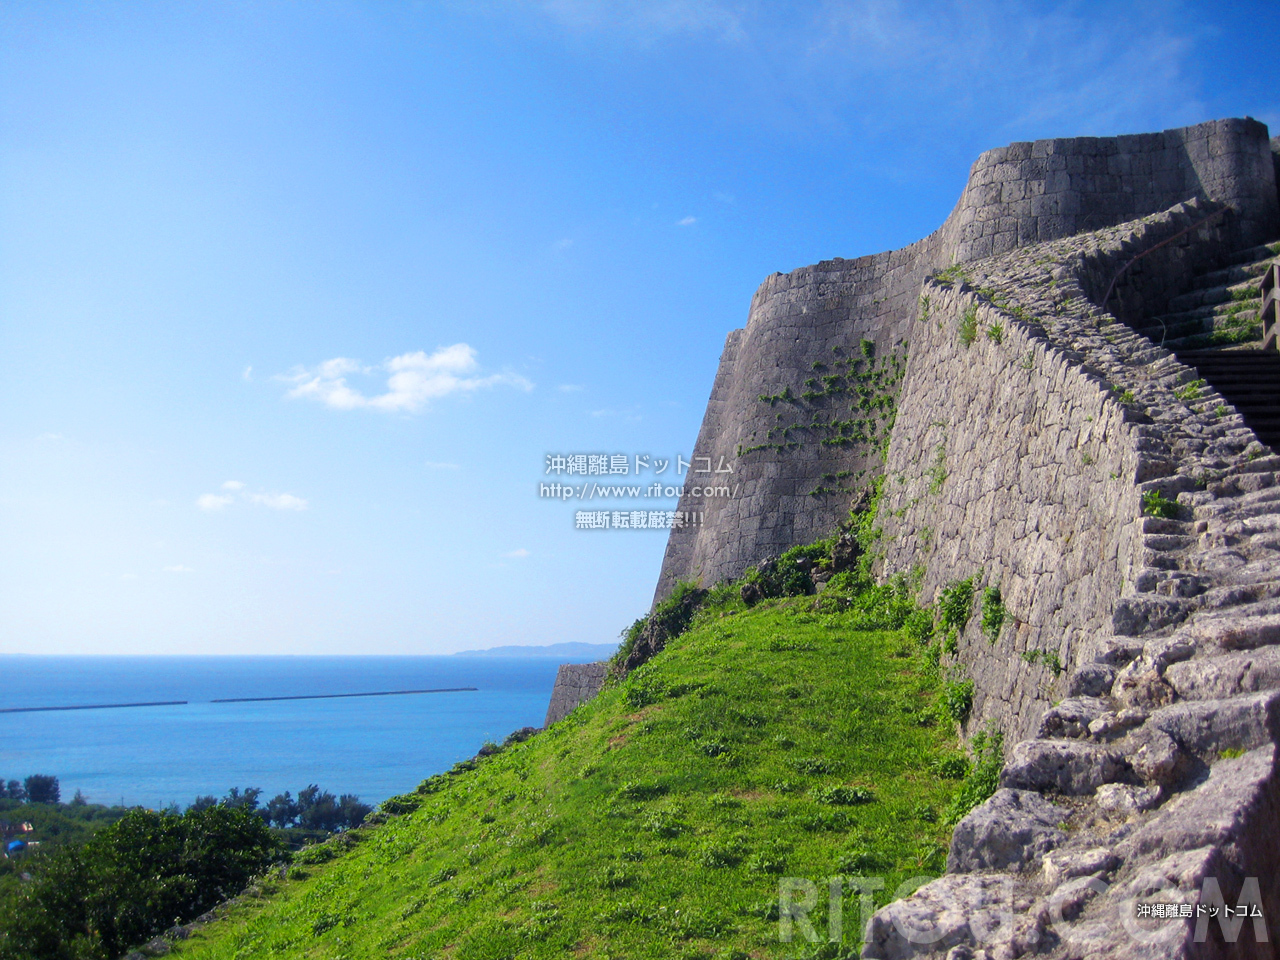 勝連城跡は沖縄のマチュピチュ 天空の城は世界遺産なのに無料 沖縄本島中部エリアの旅行記 旅行ガイド